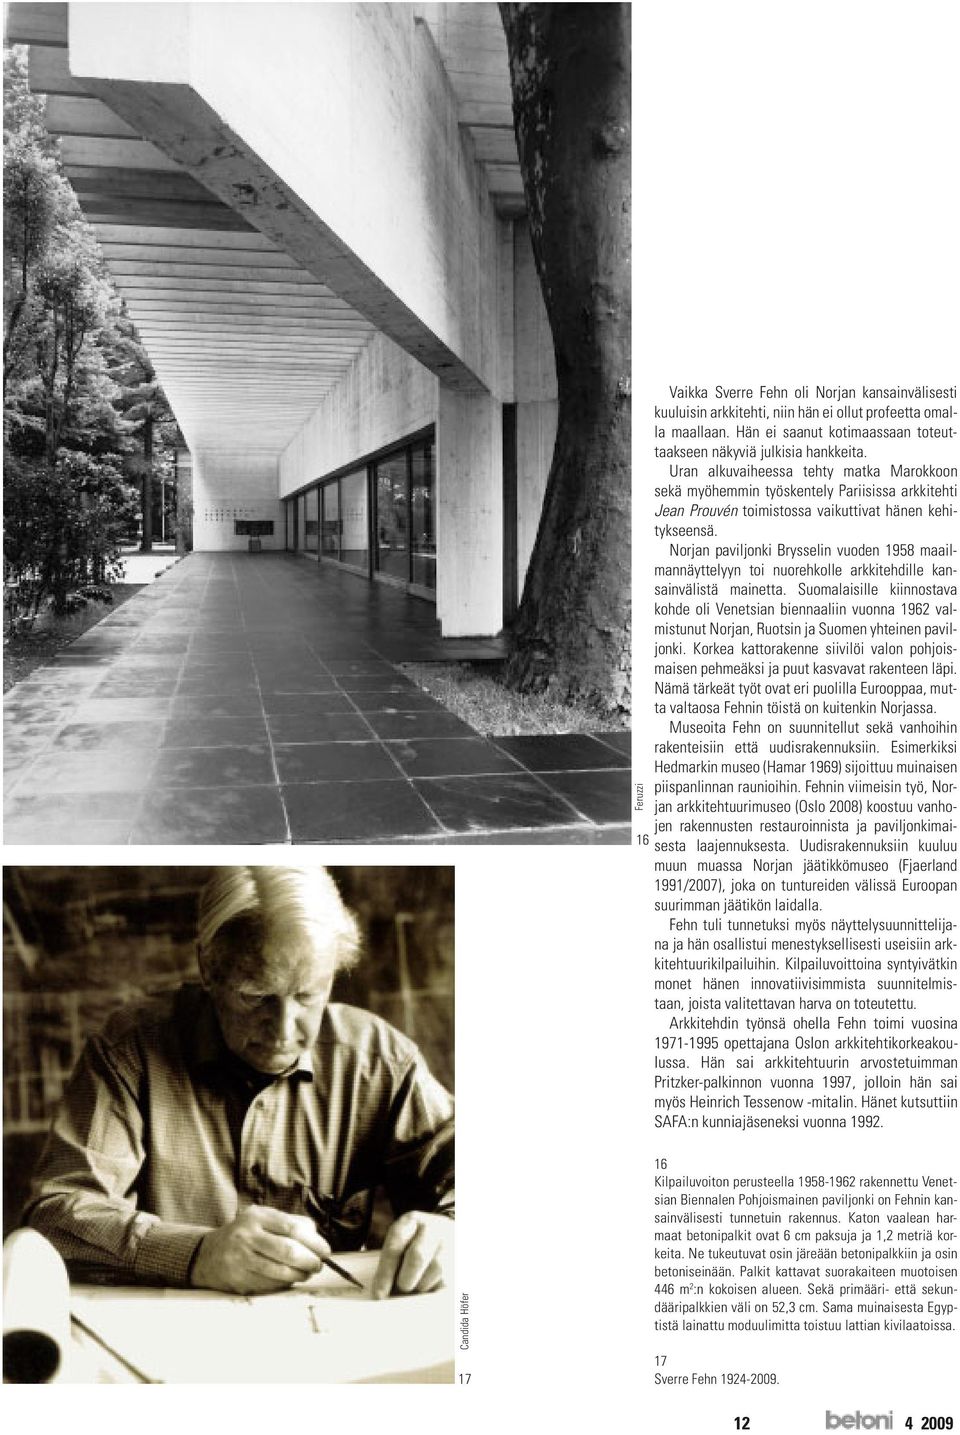 Norjan paviljonki Brysselin vuoden 1958 maailmannäyttelyyn toi nuorehkolle arkkitehdille kansainvälistä mainetta.